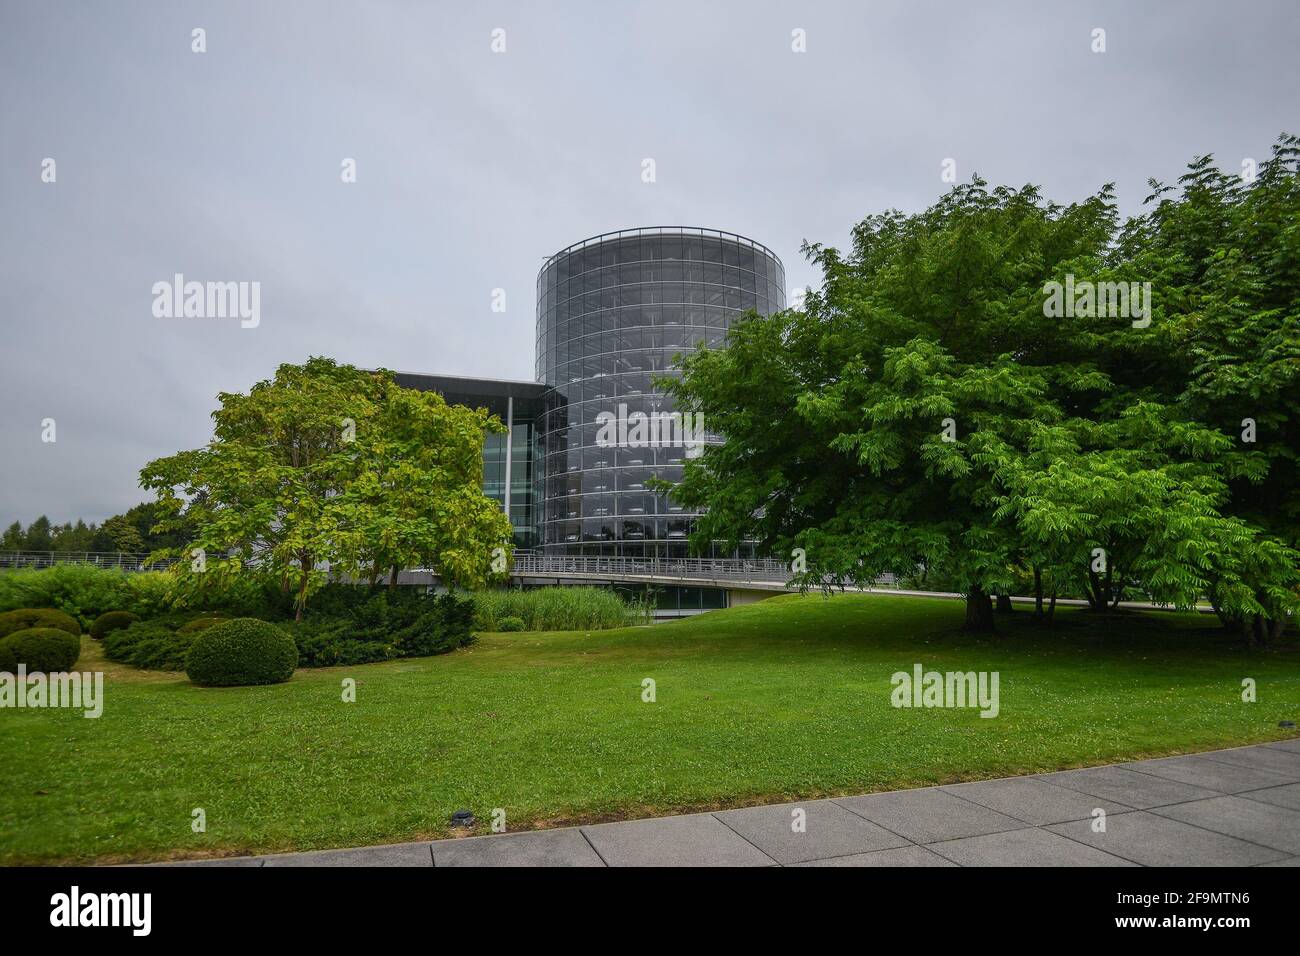 DEUTSCHLAND DRESDEN - AUGUST 2015: Panorama des Glasgebäudes des Volkswagen-Werks, Grünflächen in der Nähe eines Gebäudes. Glaeserne Manufaktur. Glasmanufaktur Volkswagen. Stockfoto